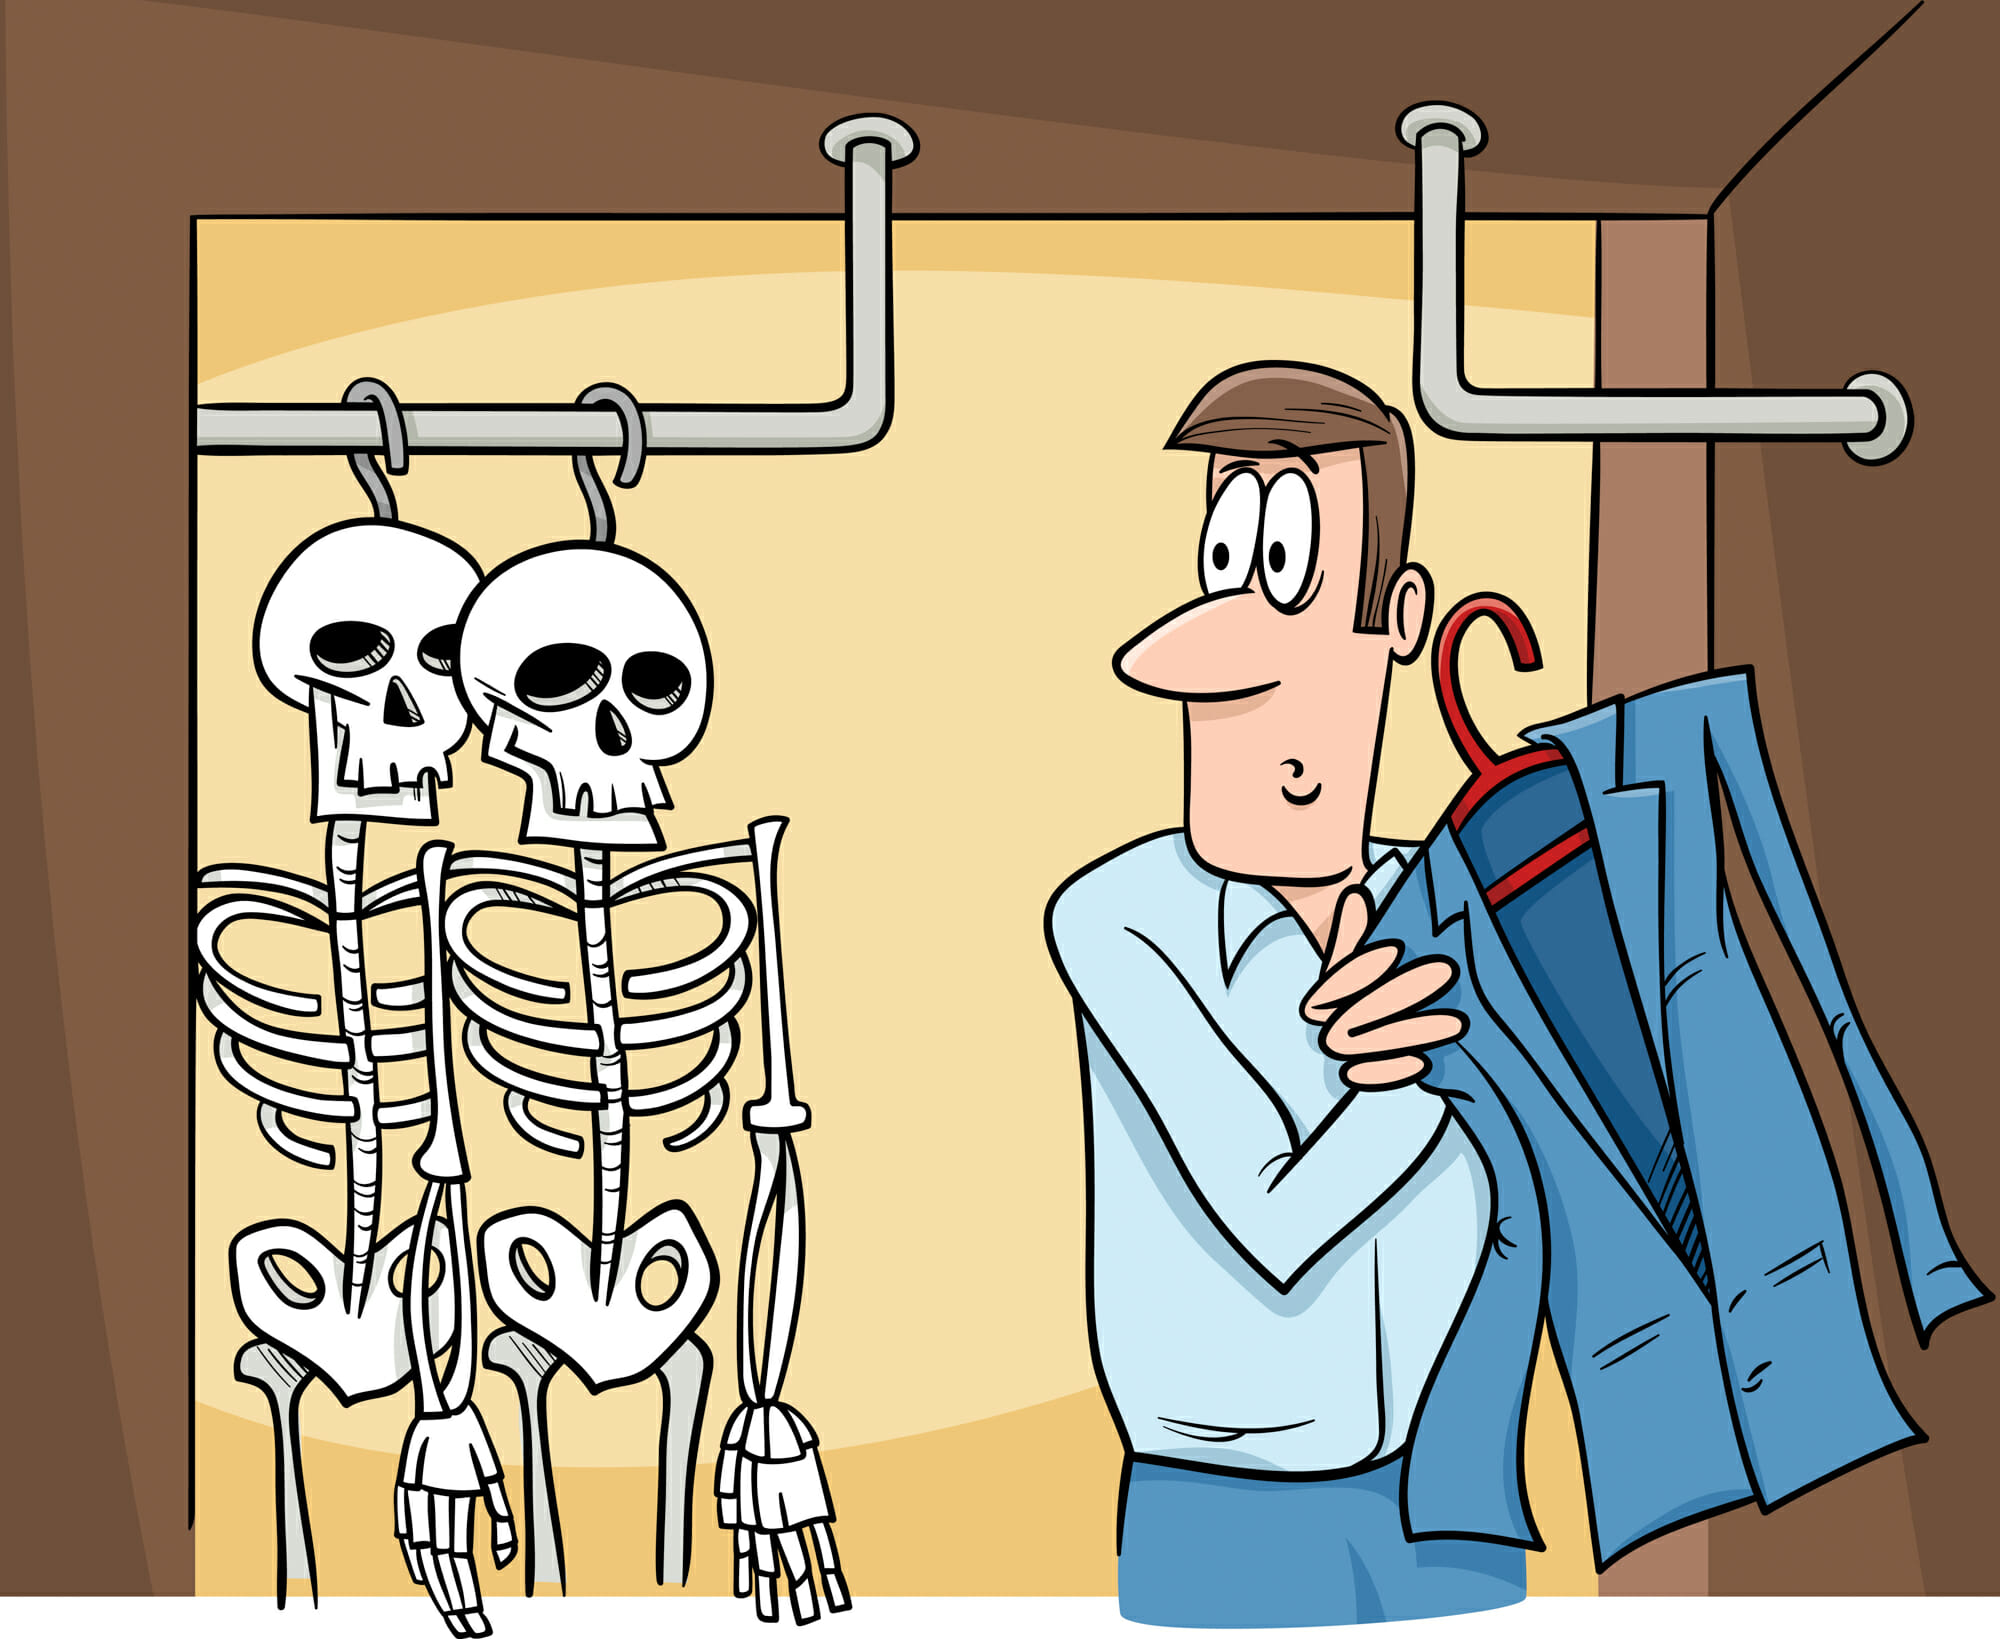 скелет в шкафу 2017